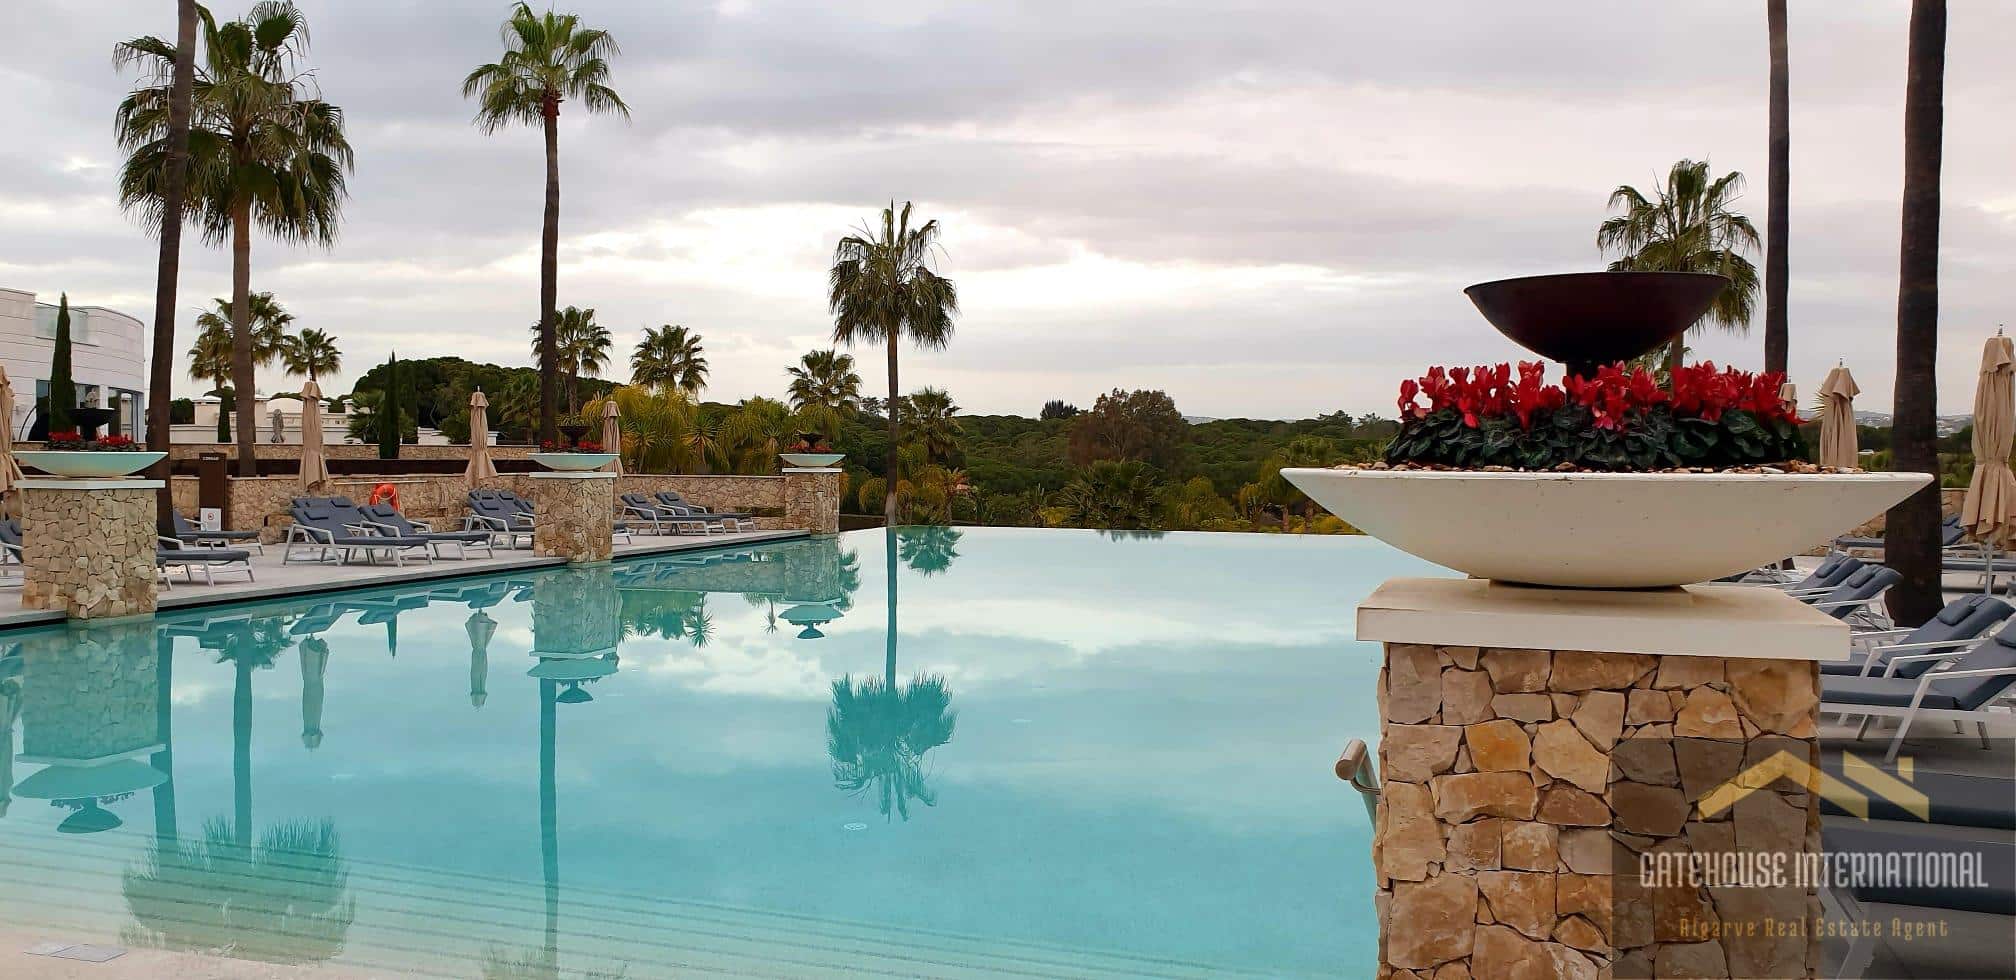 The Conrad Algarve Hotel Spa